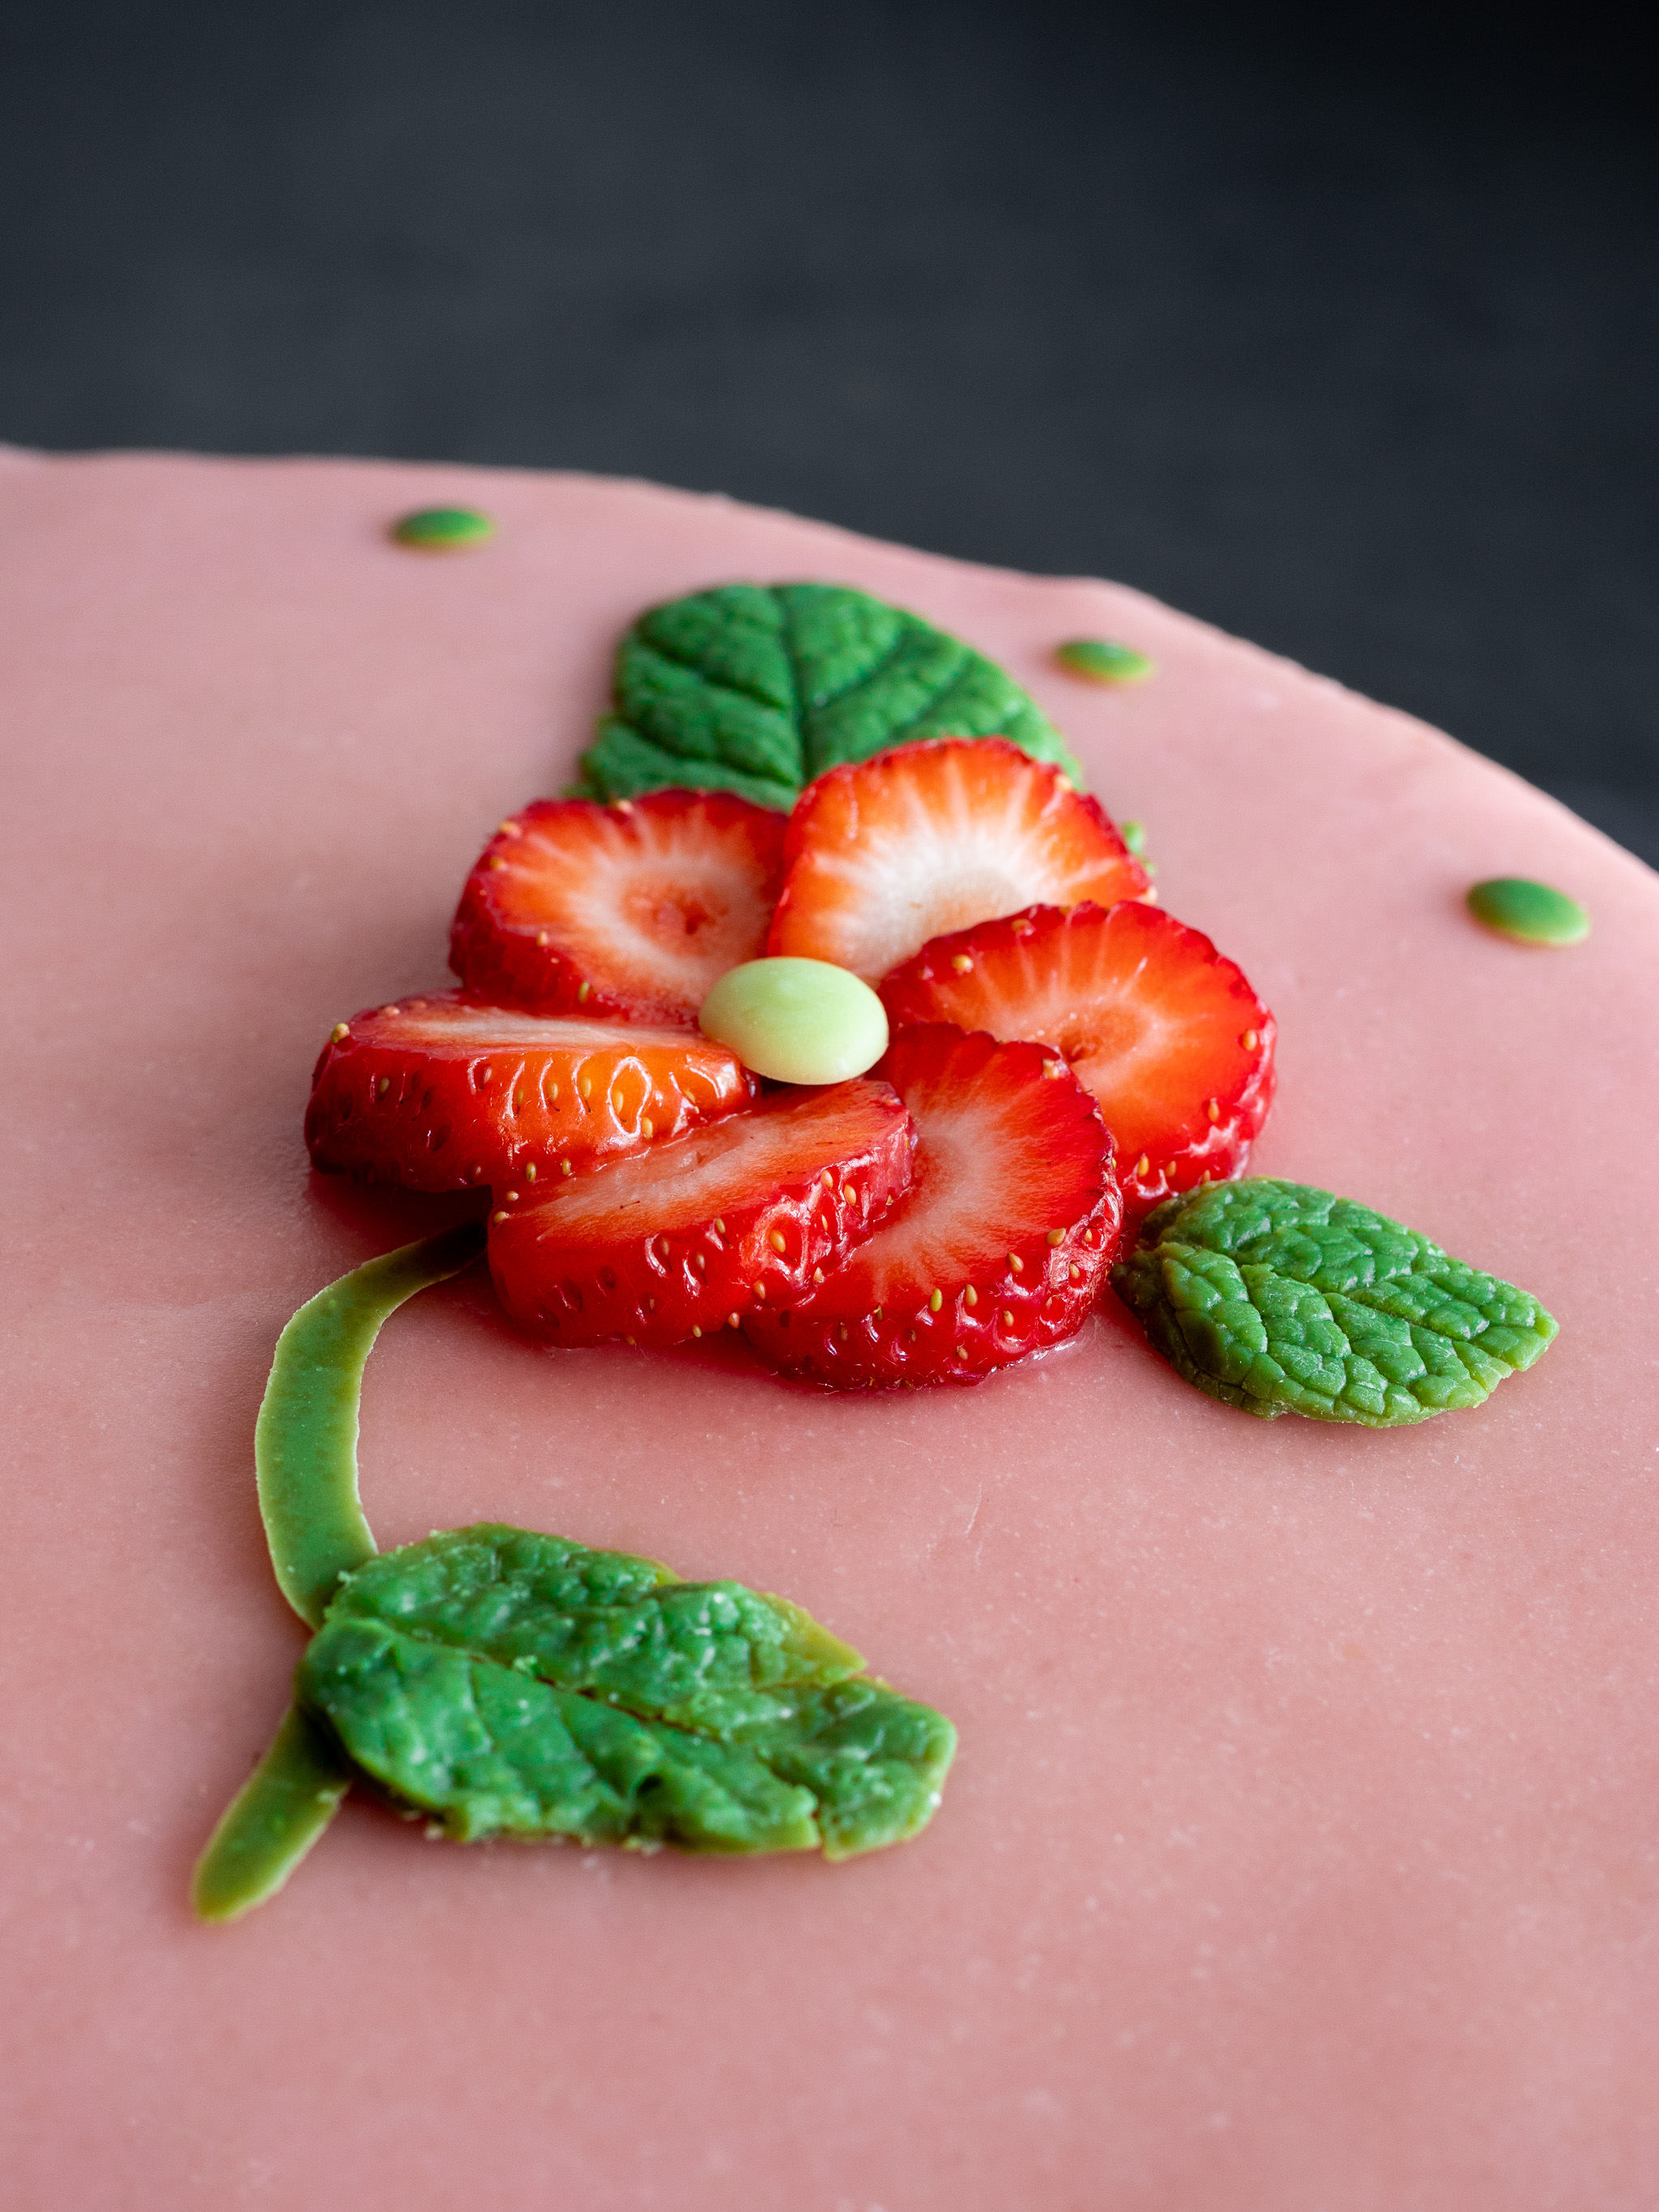 décoration de notre fraisier vegan avec une fleur en rondelle de fraise et des feuilles en chocolat blanc au thé matcha pour le côté vert